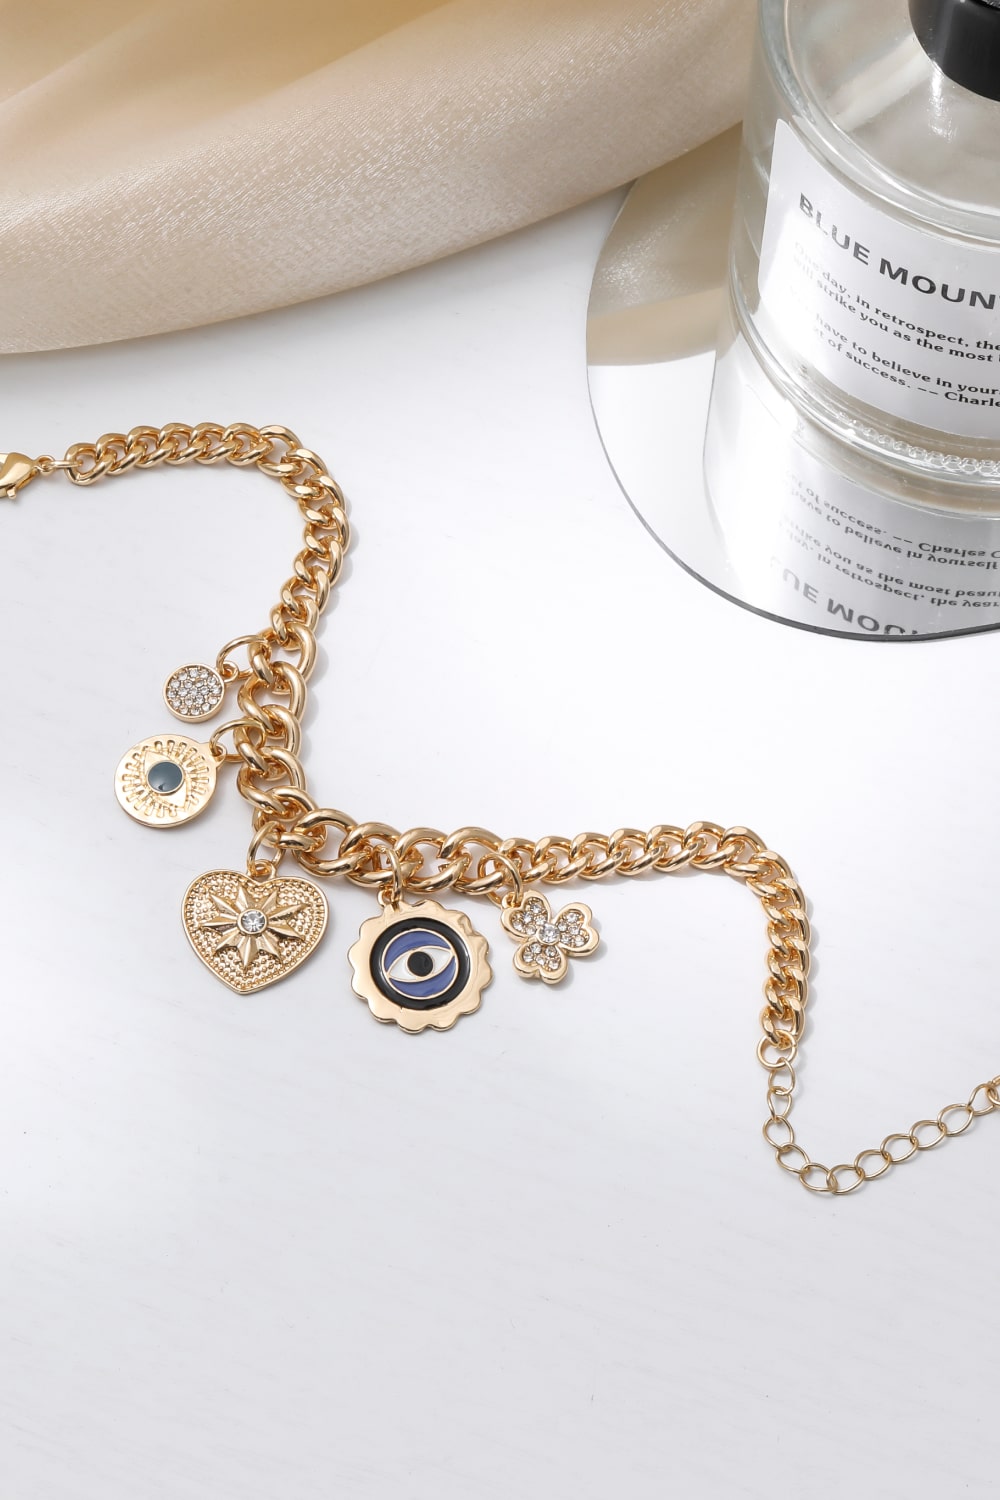 Multi-Charm Chunky Chain Bracelet - Gold / One Size - Women’s Jewelry - Bracelets - 3 - 2024